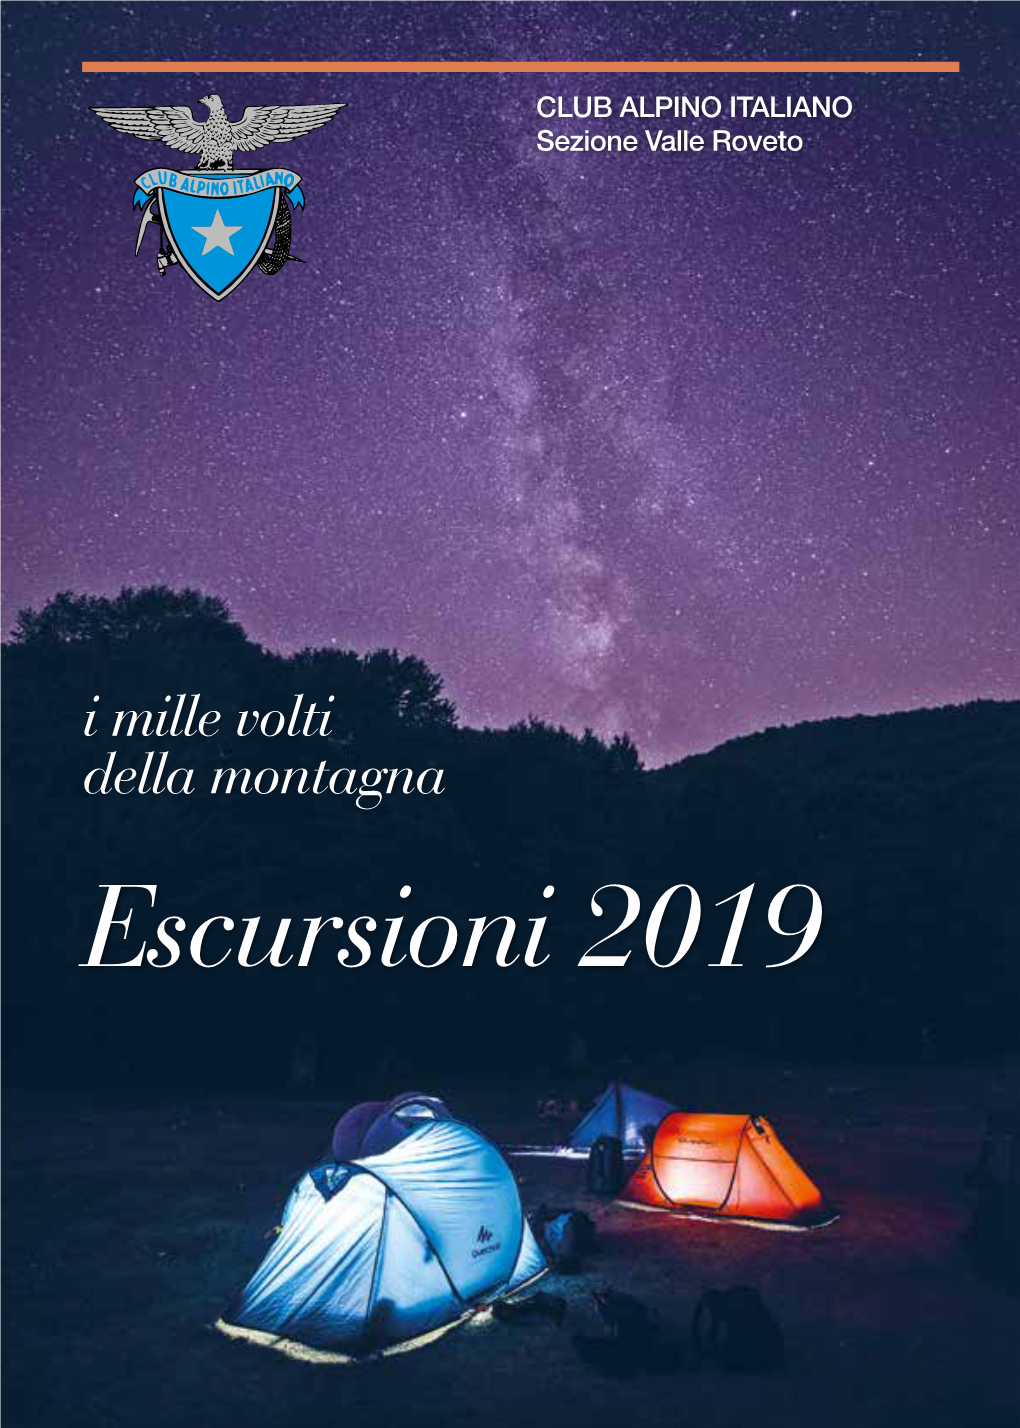 Escursioni 2019 CLUB ALPINO ITALIANO Sezione Valle Roveto